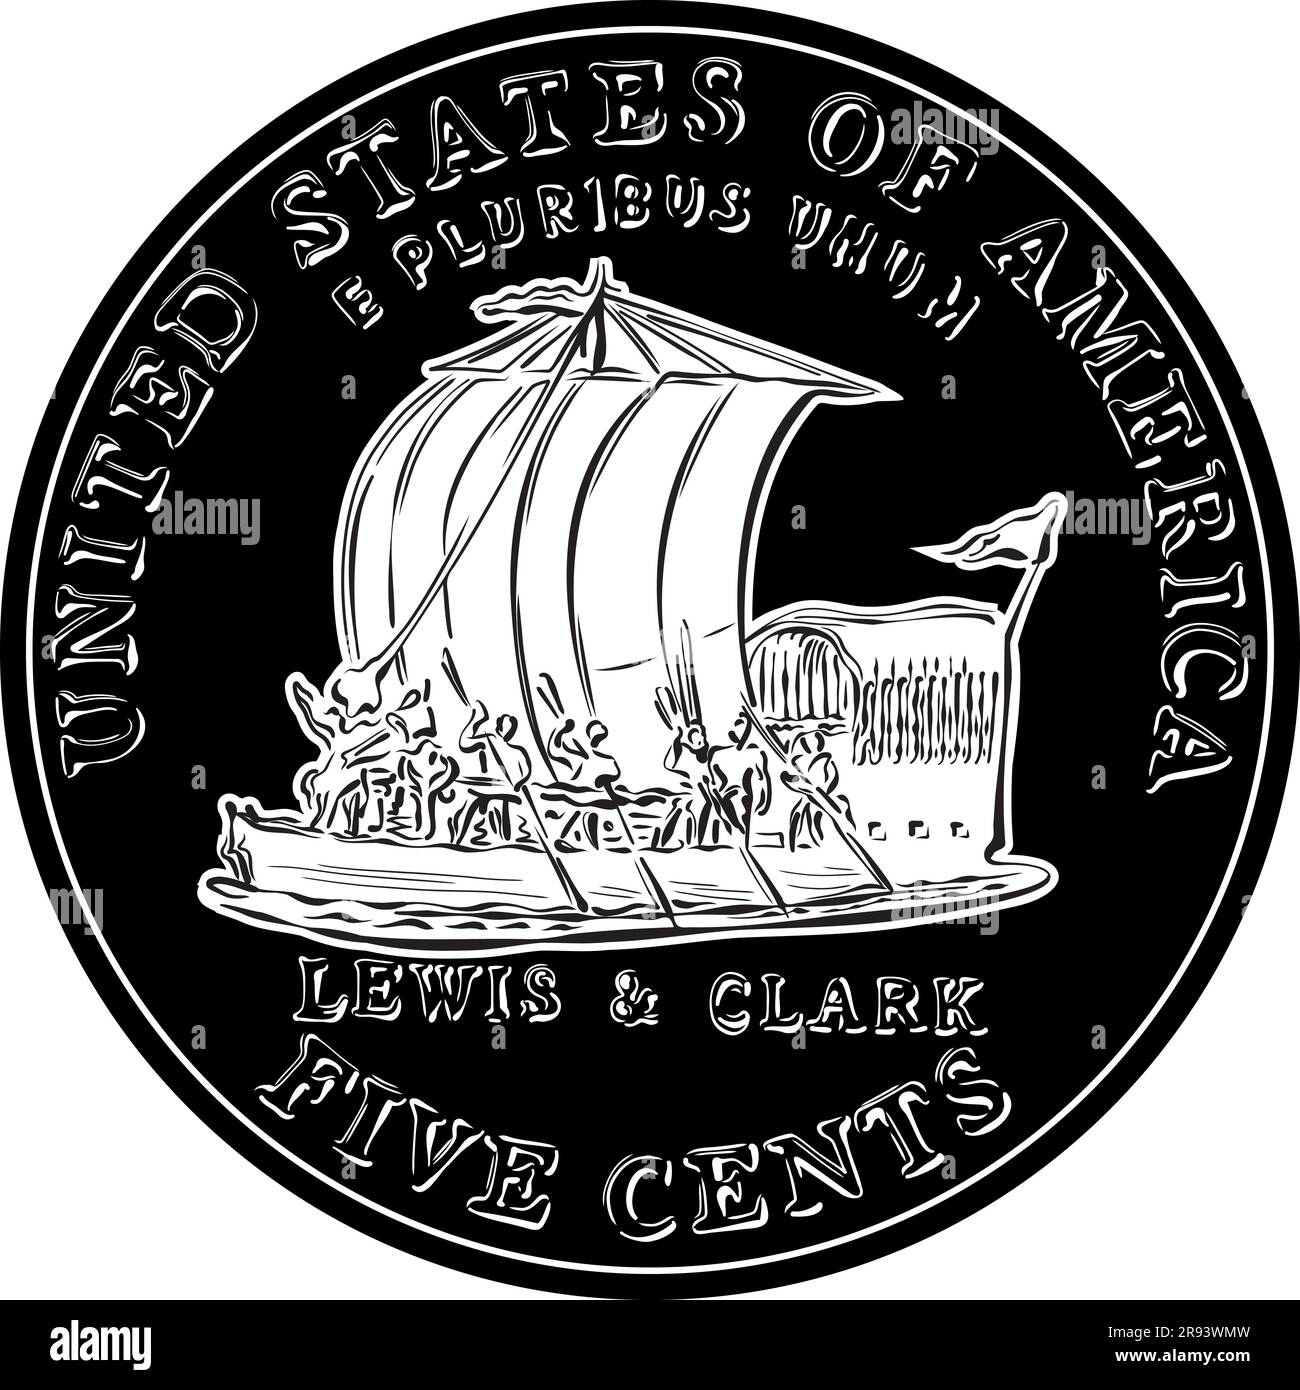 Jefferson nickel, American Money, USA pièce de cinq cents avec le bateau à quille de Lewis et Clark Expedition sur le dos. Image en noir et blanc Illustration de Vecteur